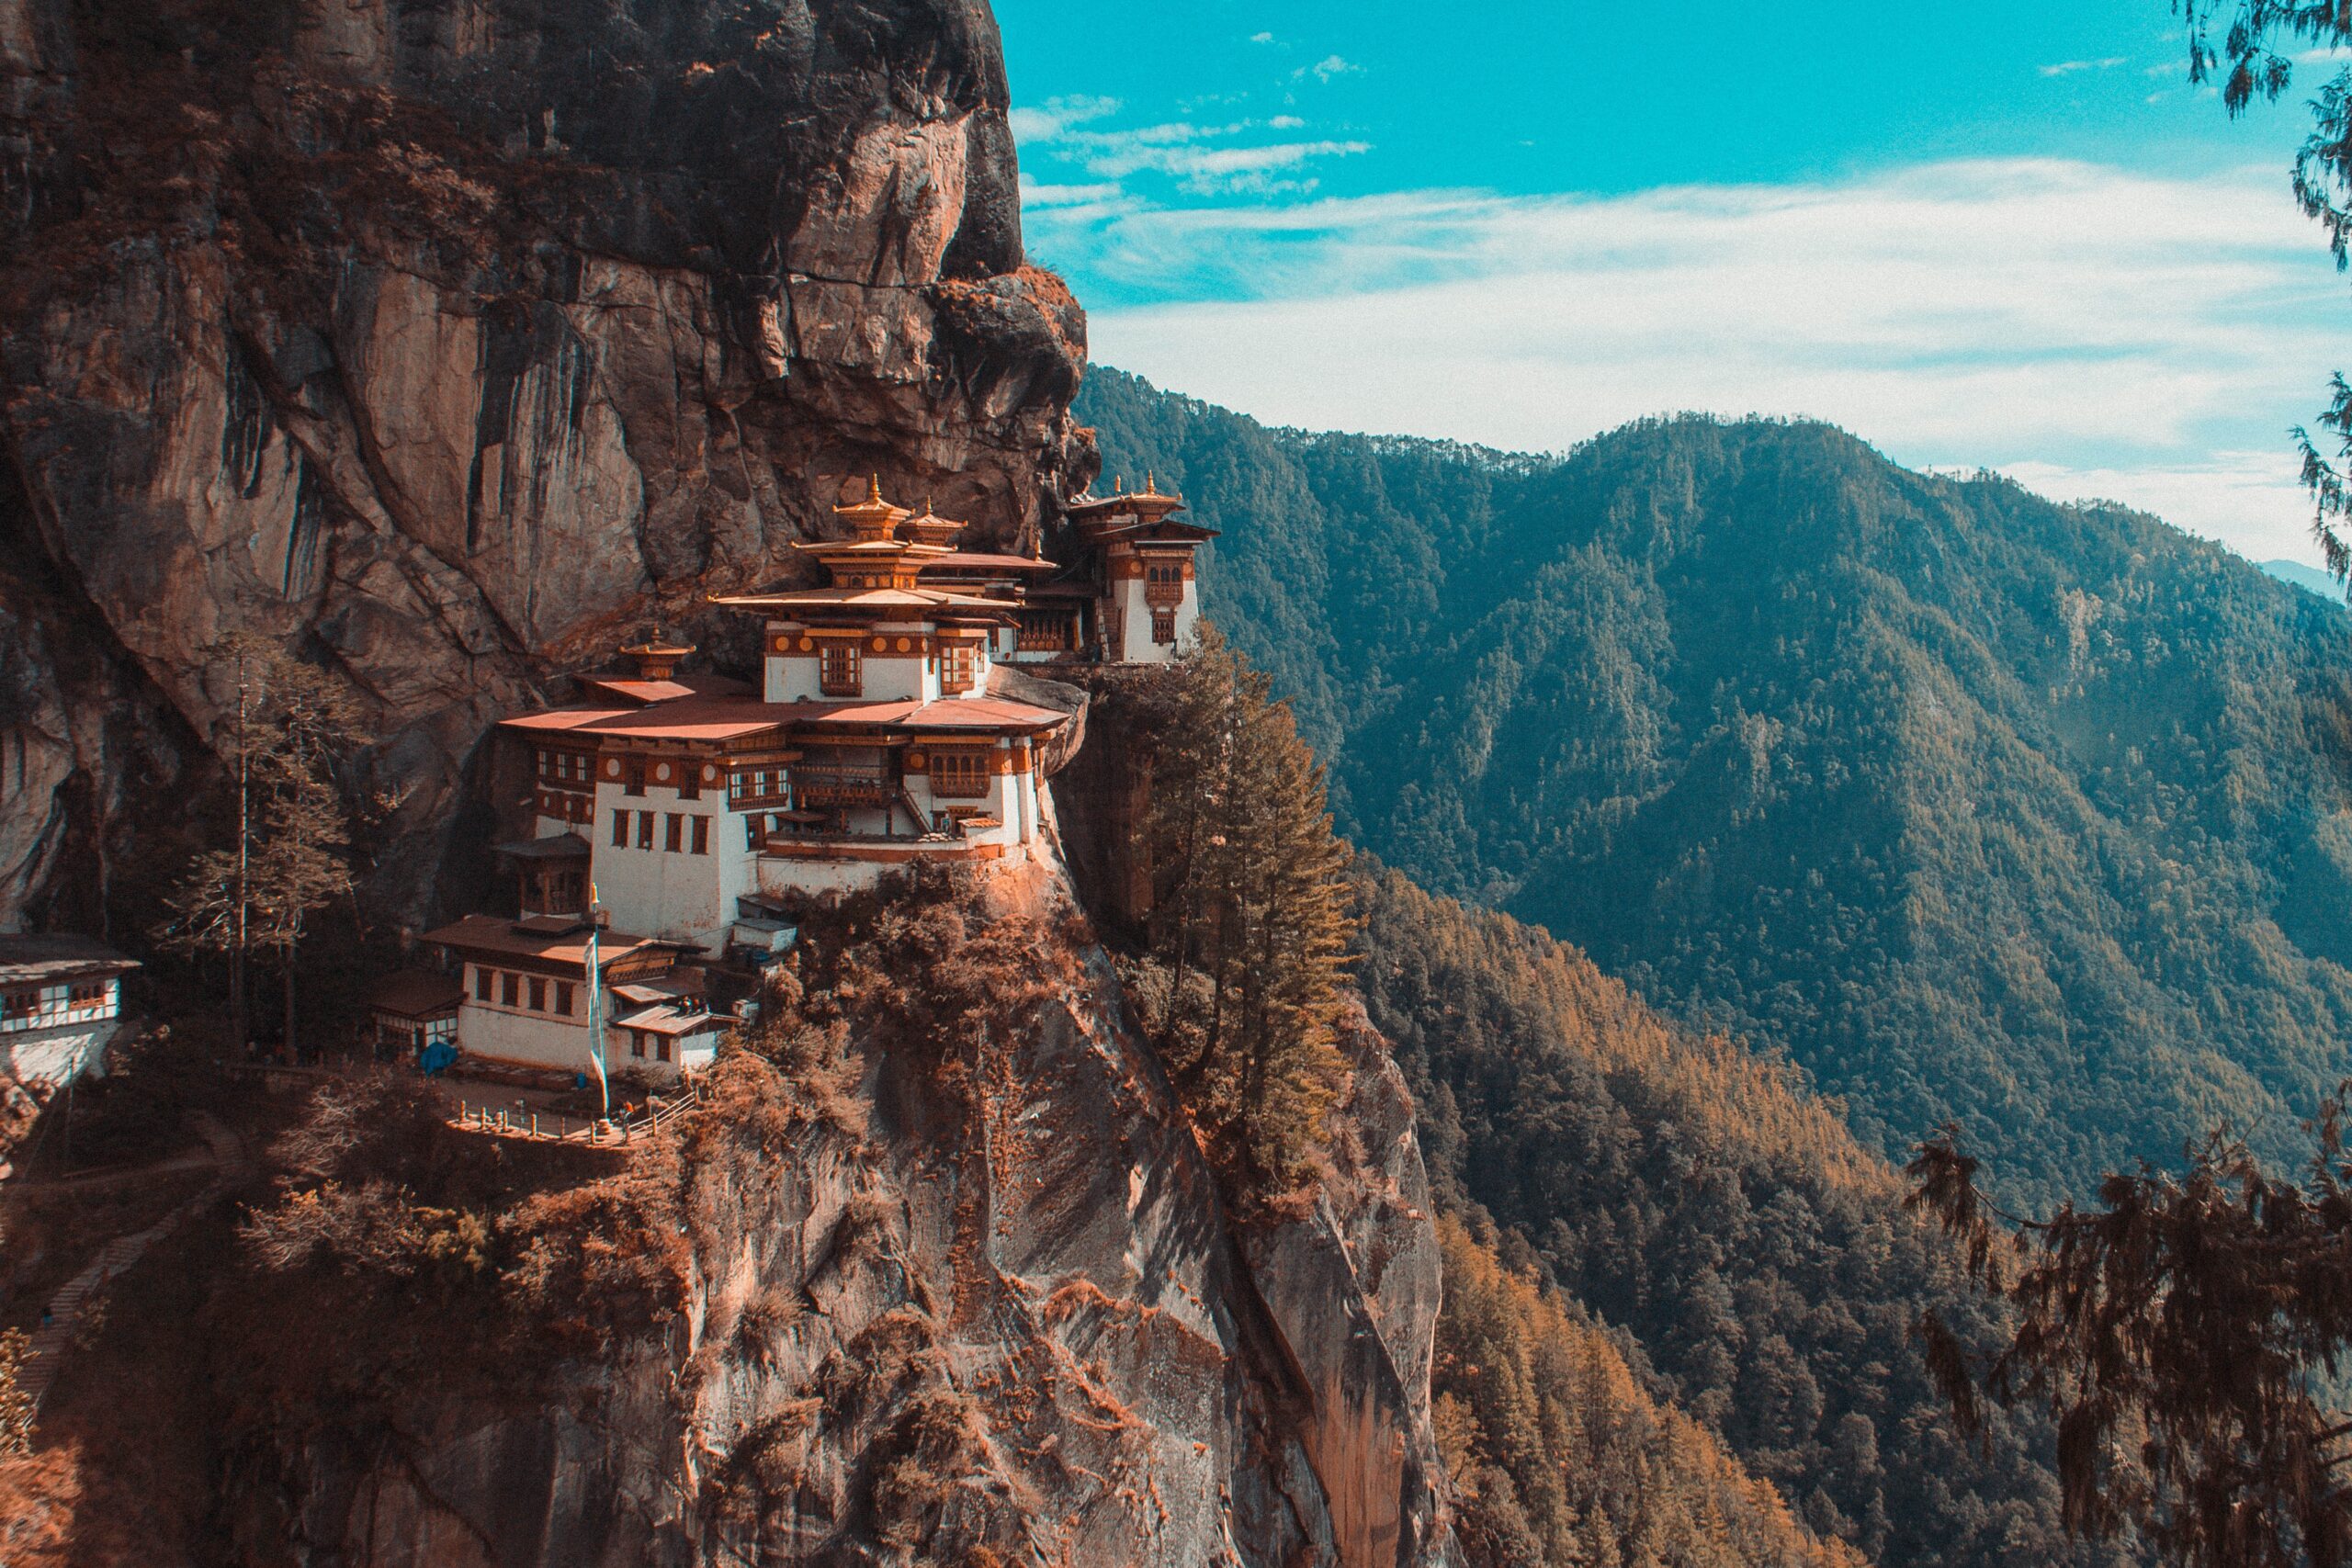 Bhutan Package